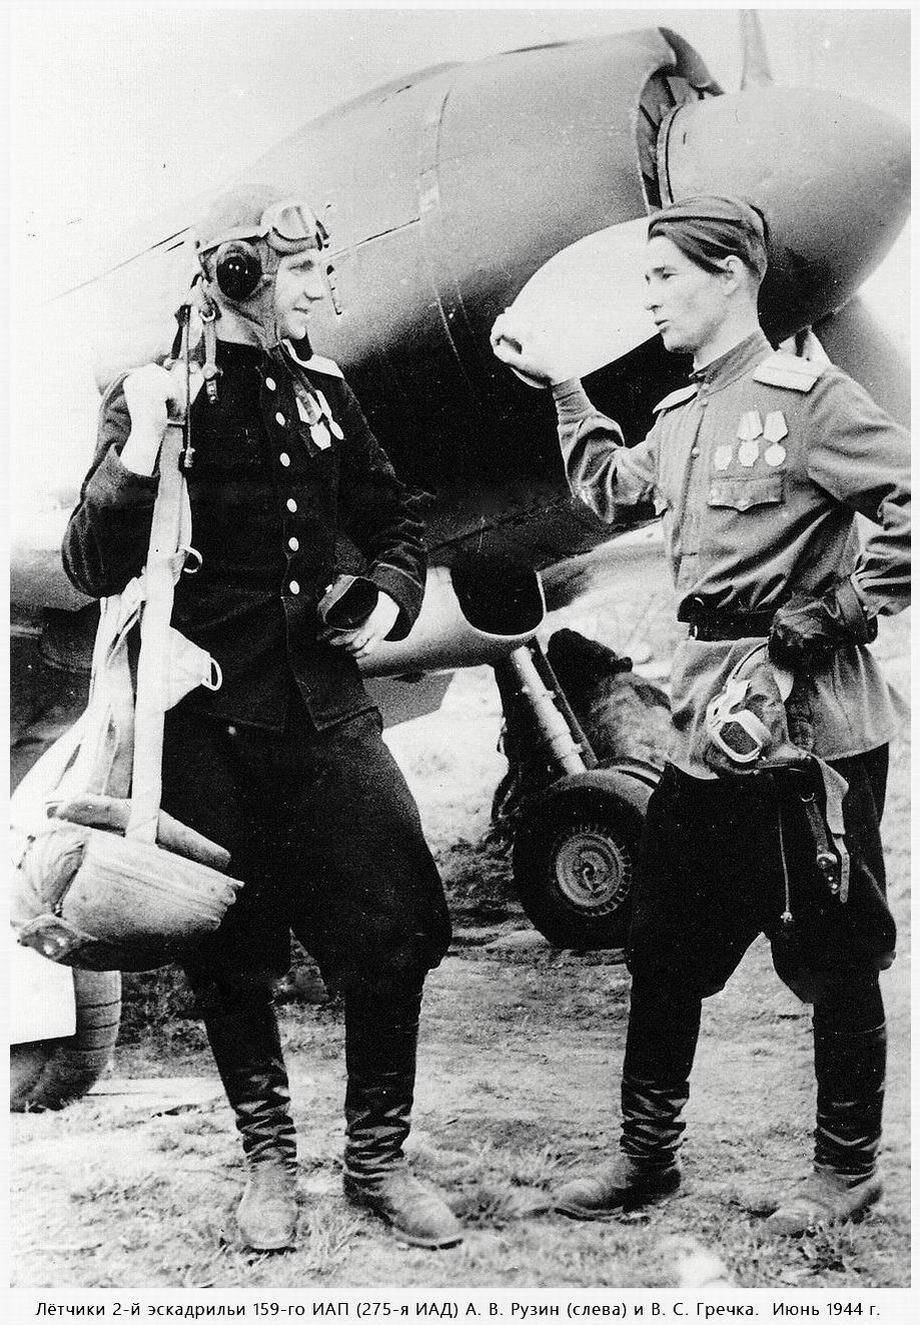 Лётчики 159-го ИАП Рузин Анатолий Васильевич (слева) и Гречка Василий Силович, 1944 год.